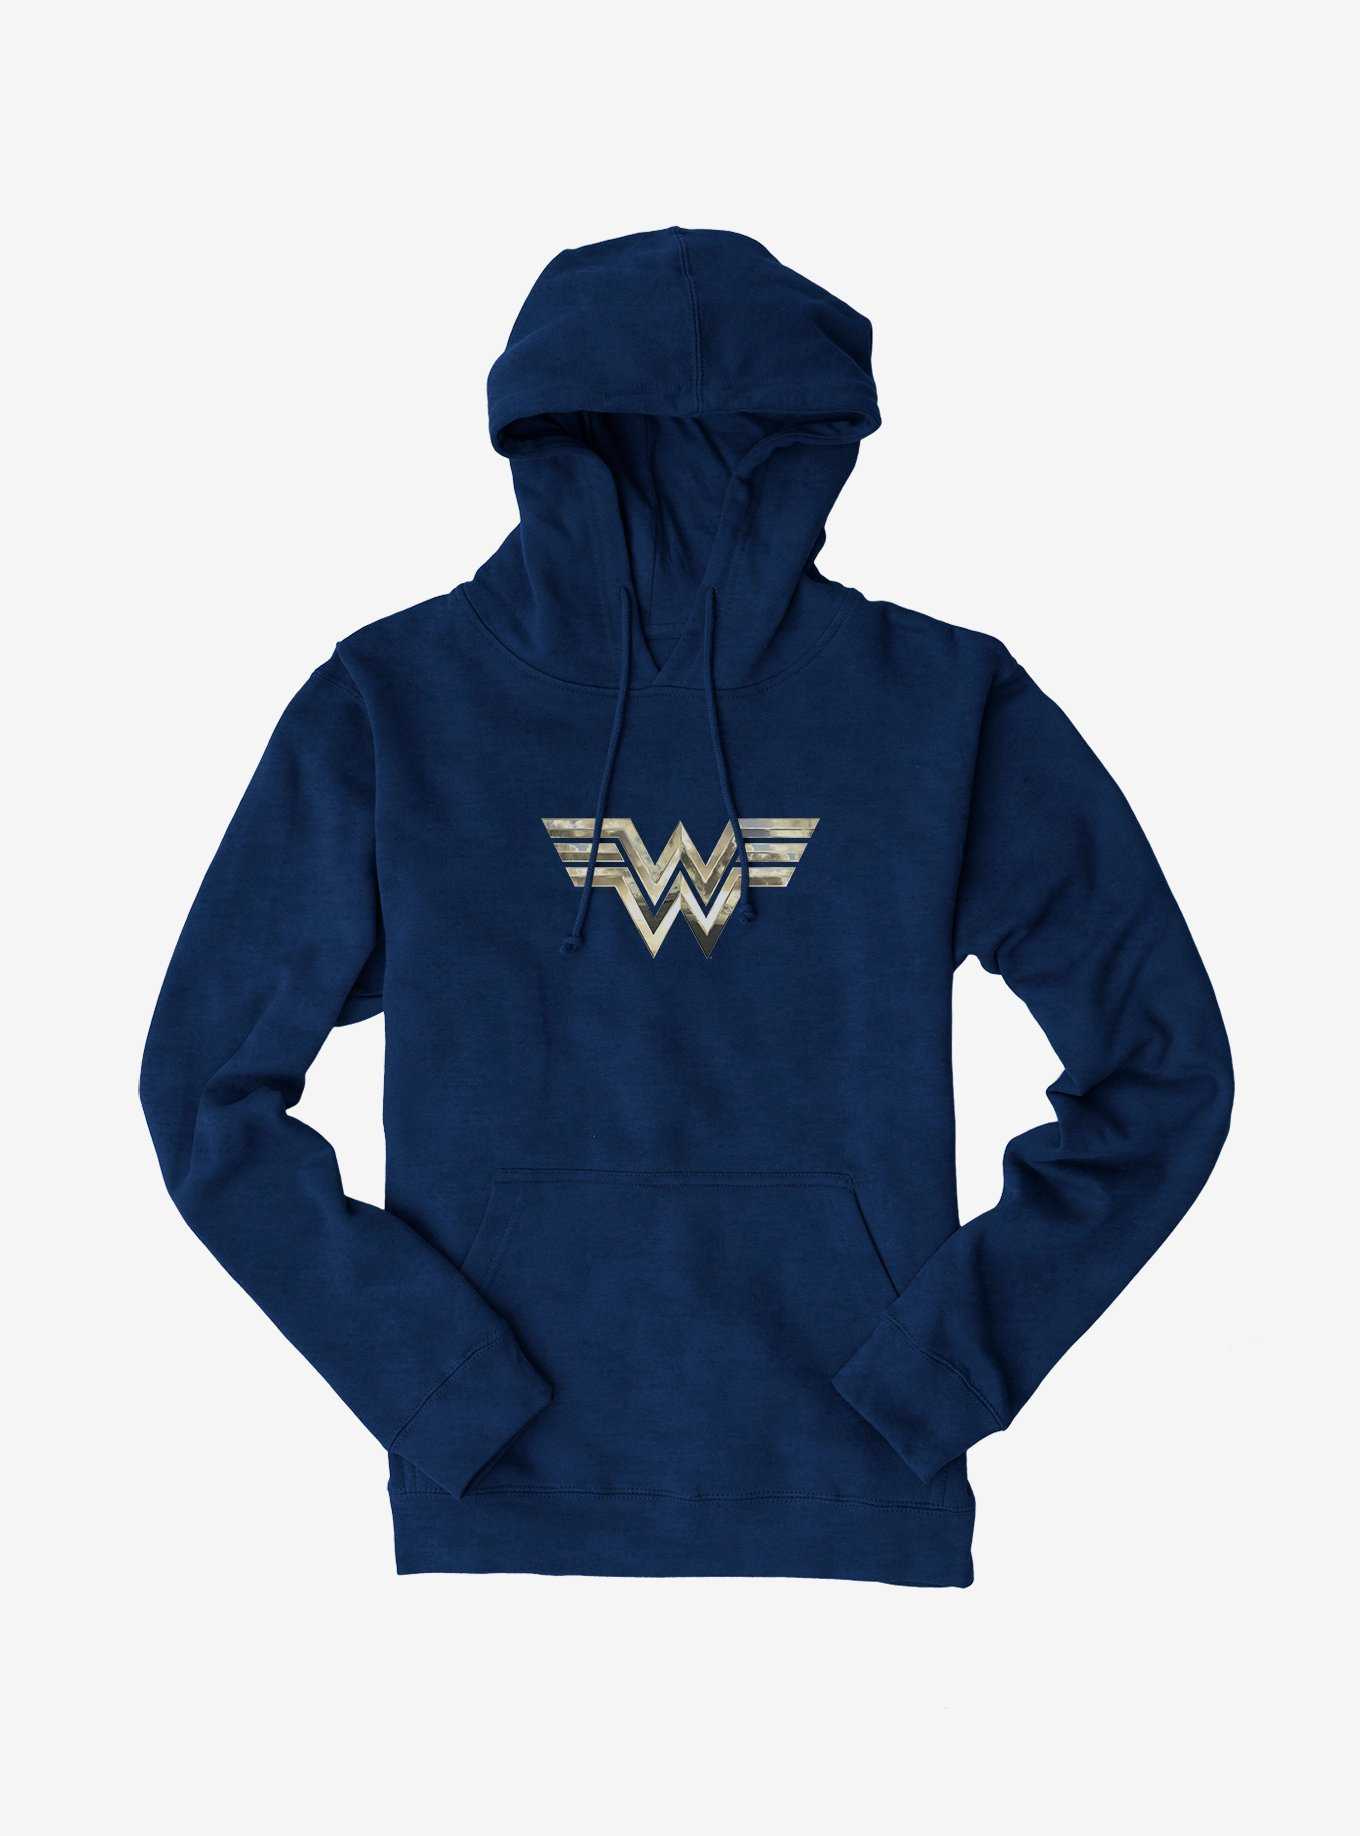 OFFICIAL Wonder Woman Hoodies & Sweaters